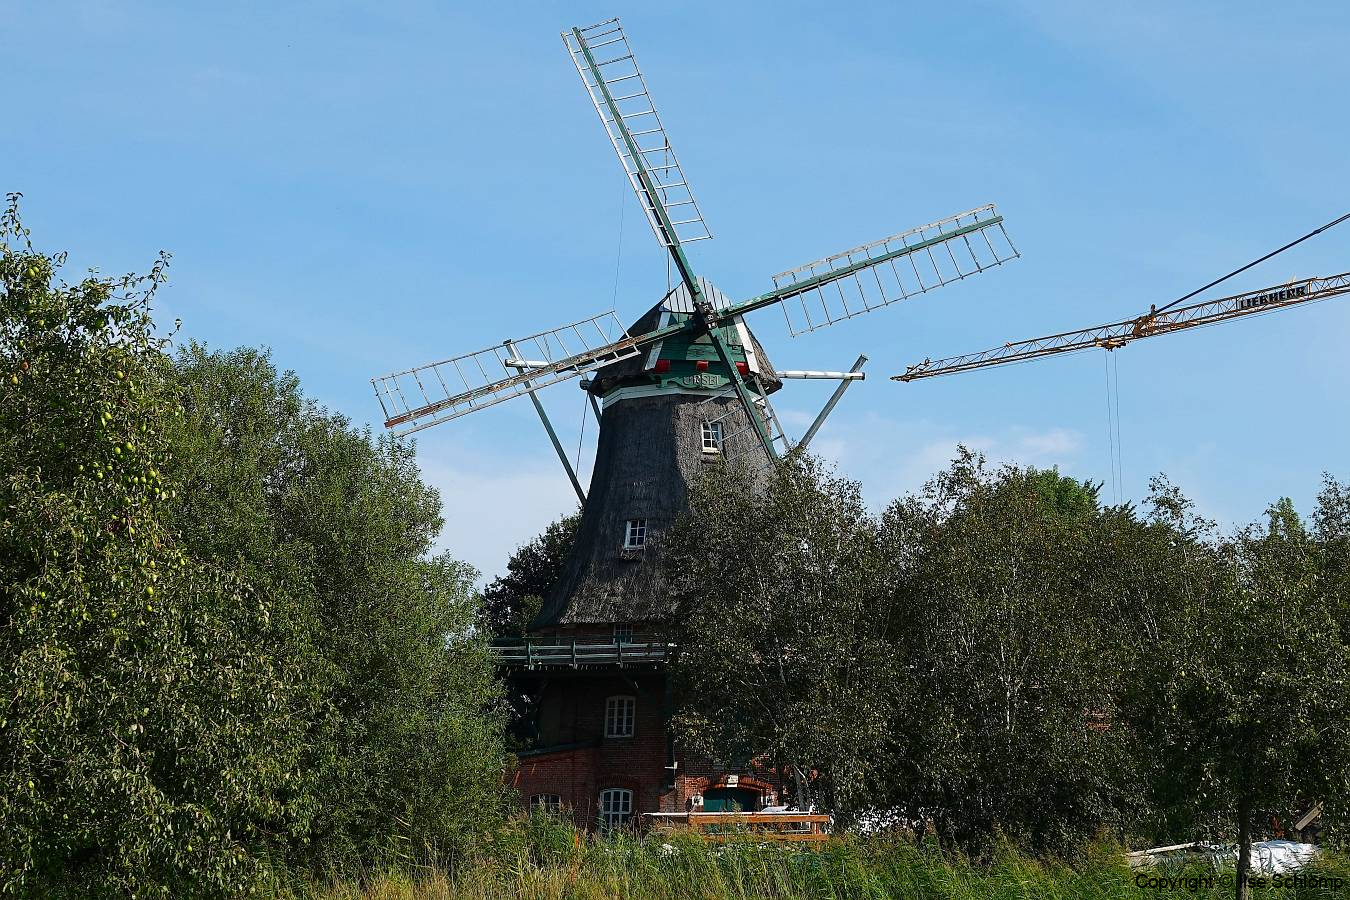 Cuxland, Loxstedt-Dedesdorf-Eidewarden 2020, Windmühle